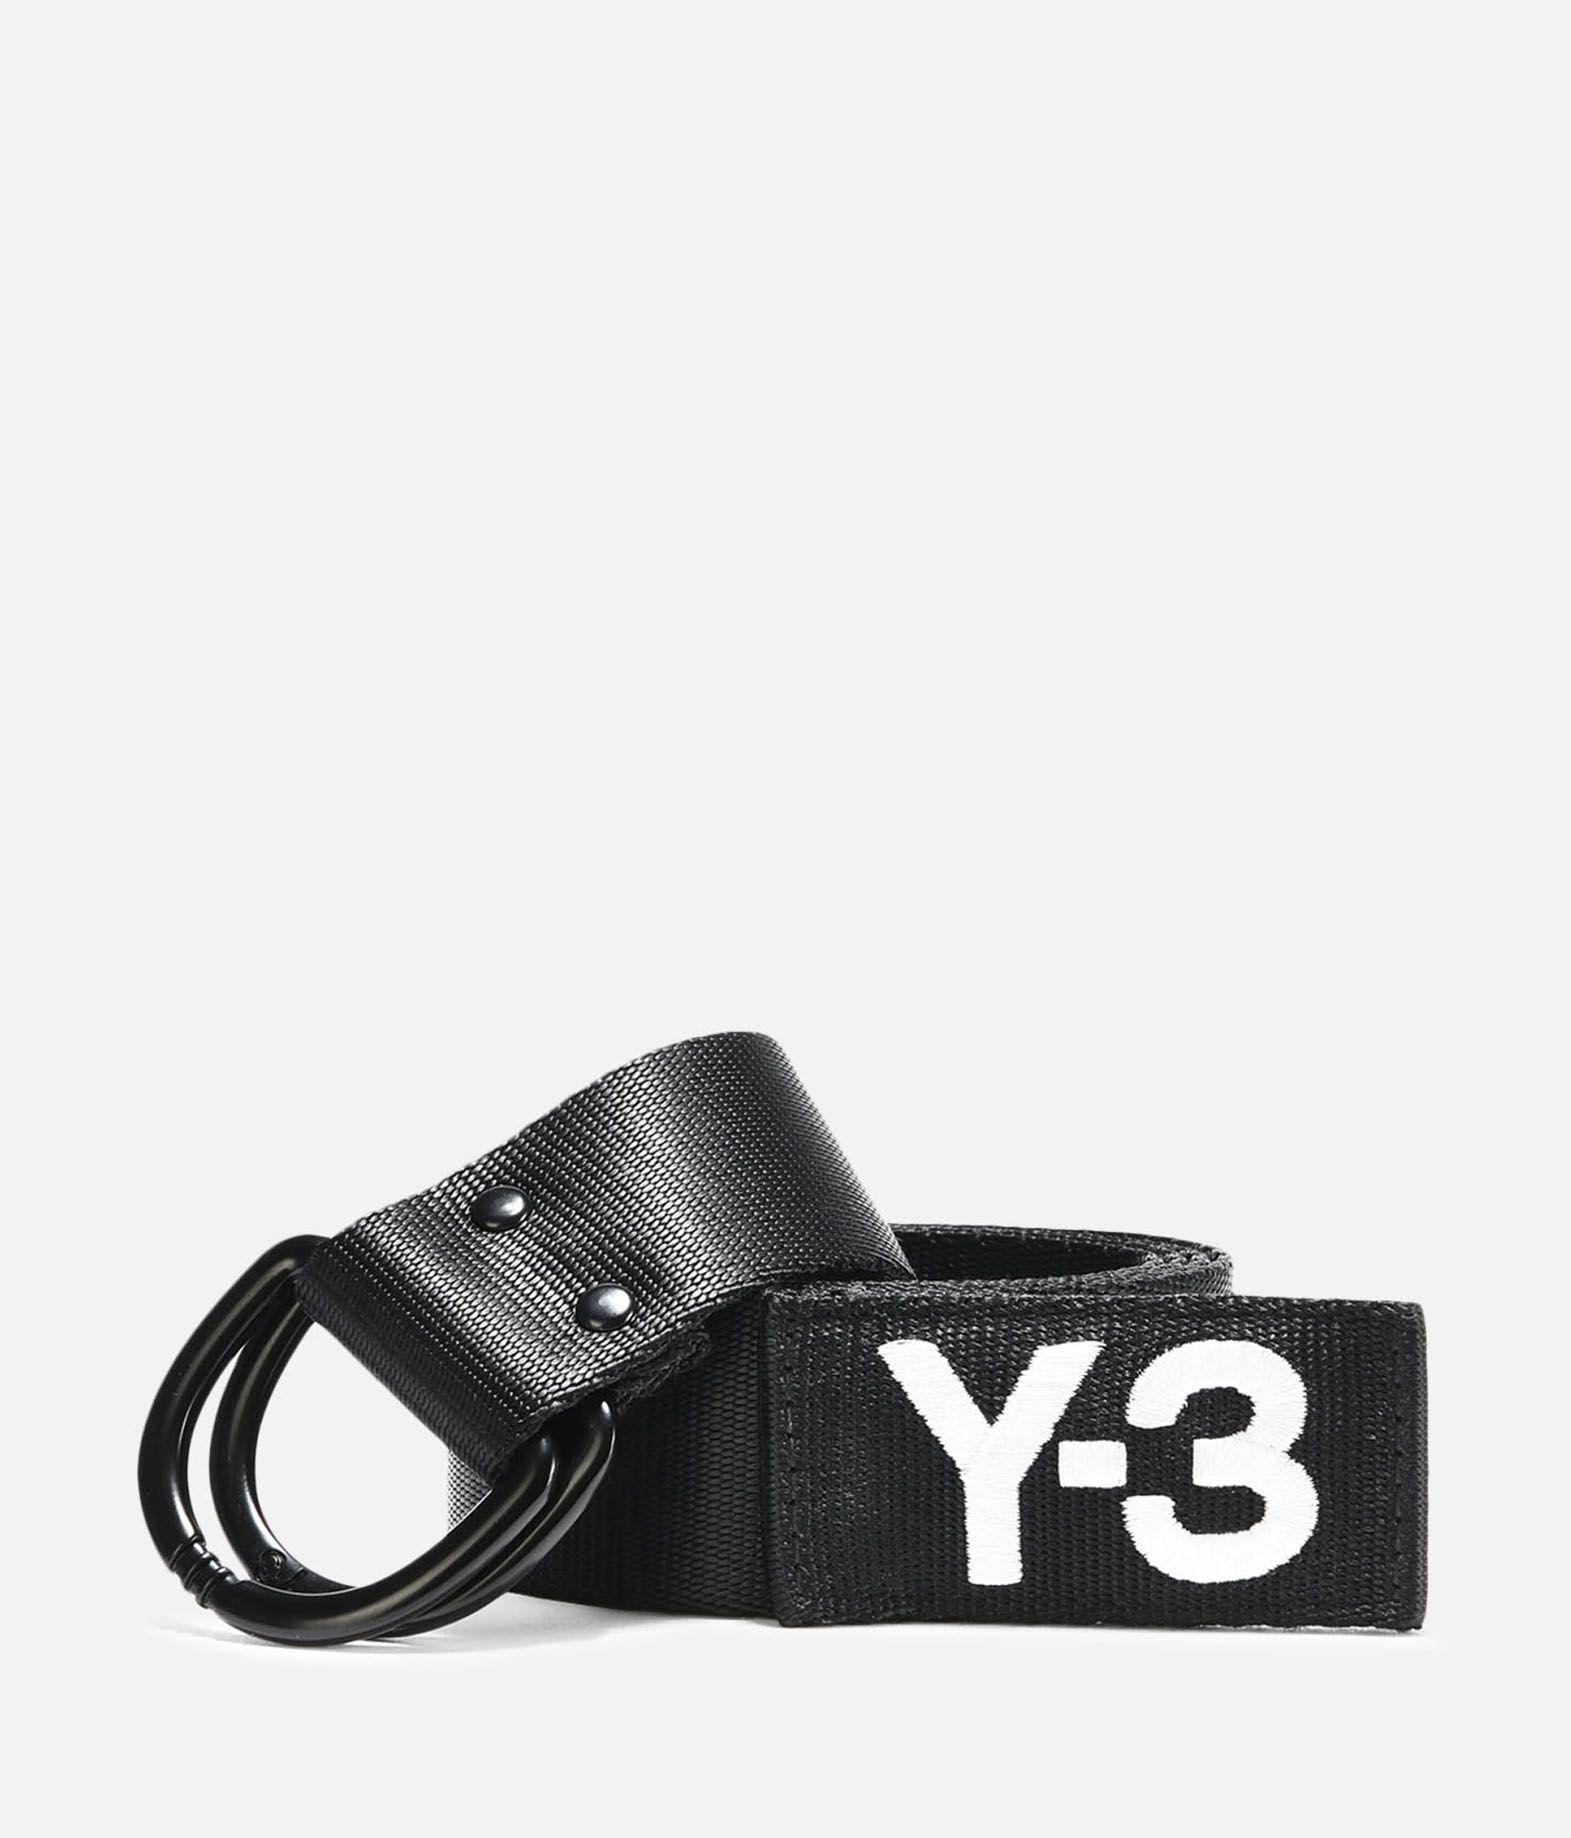 Y-3 Logo - Y 3 Logo Belt Belts. Adidas Y 3 Official Site